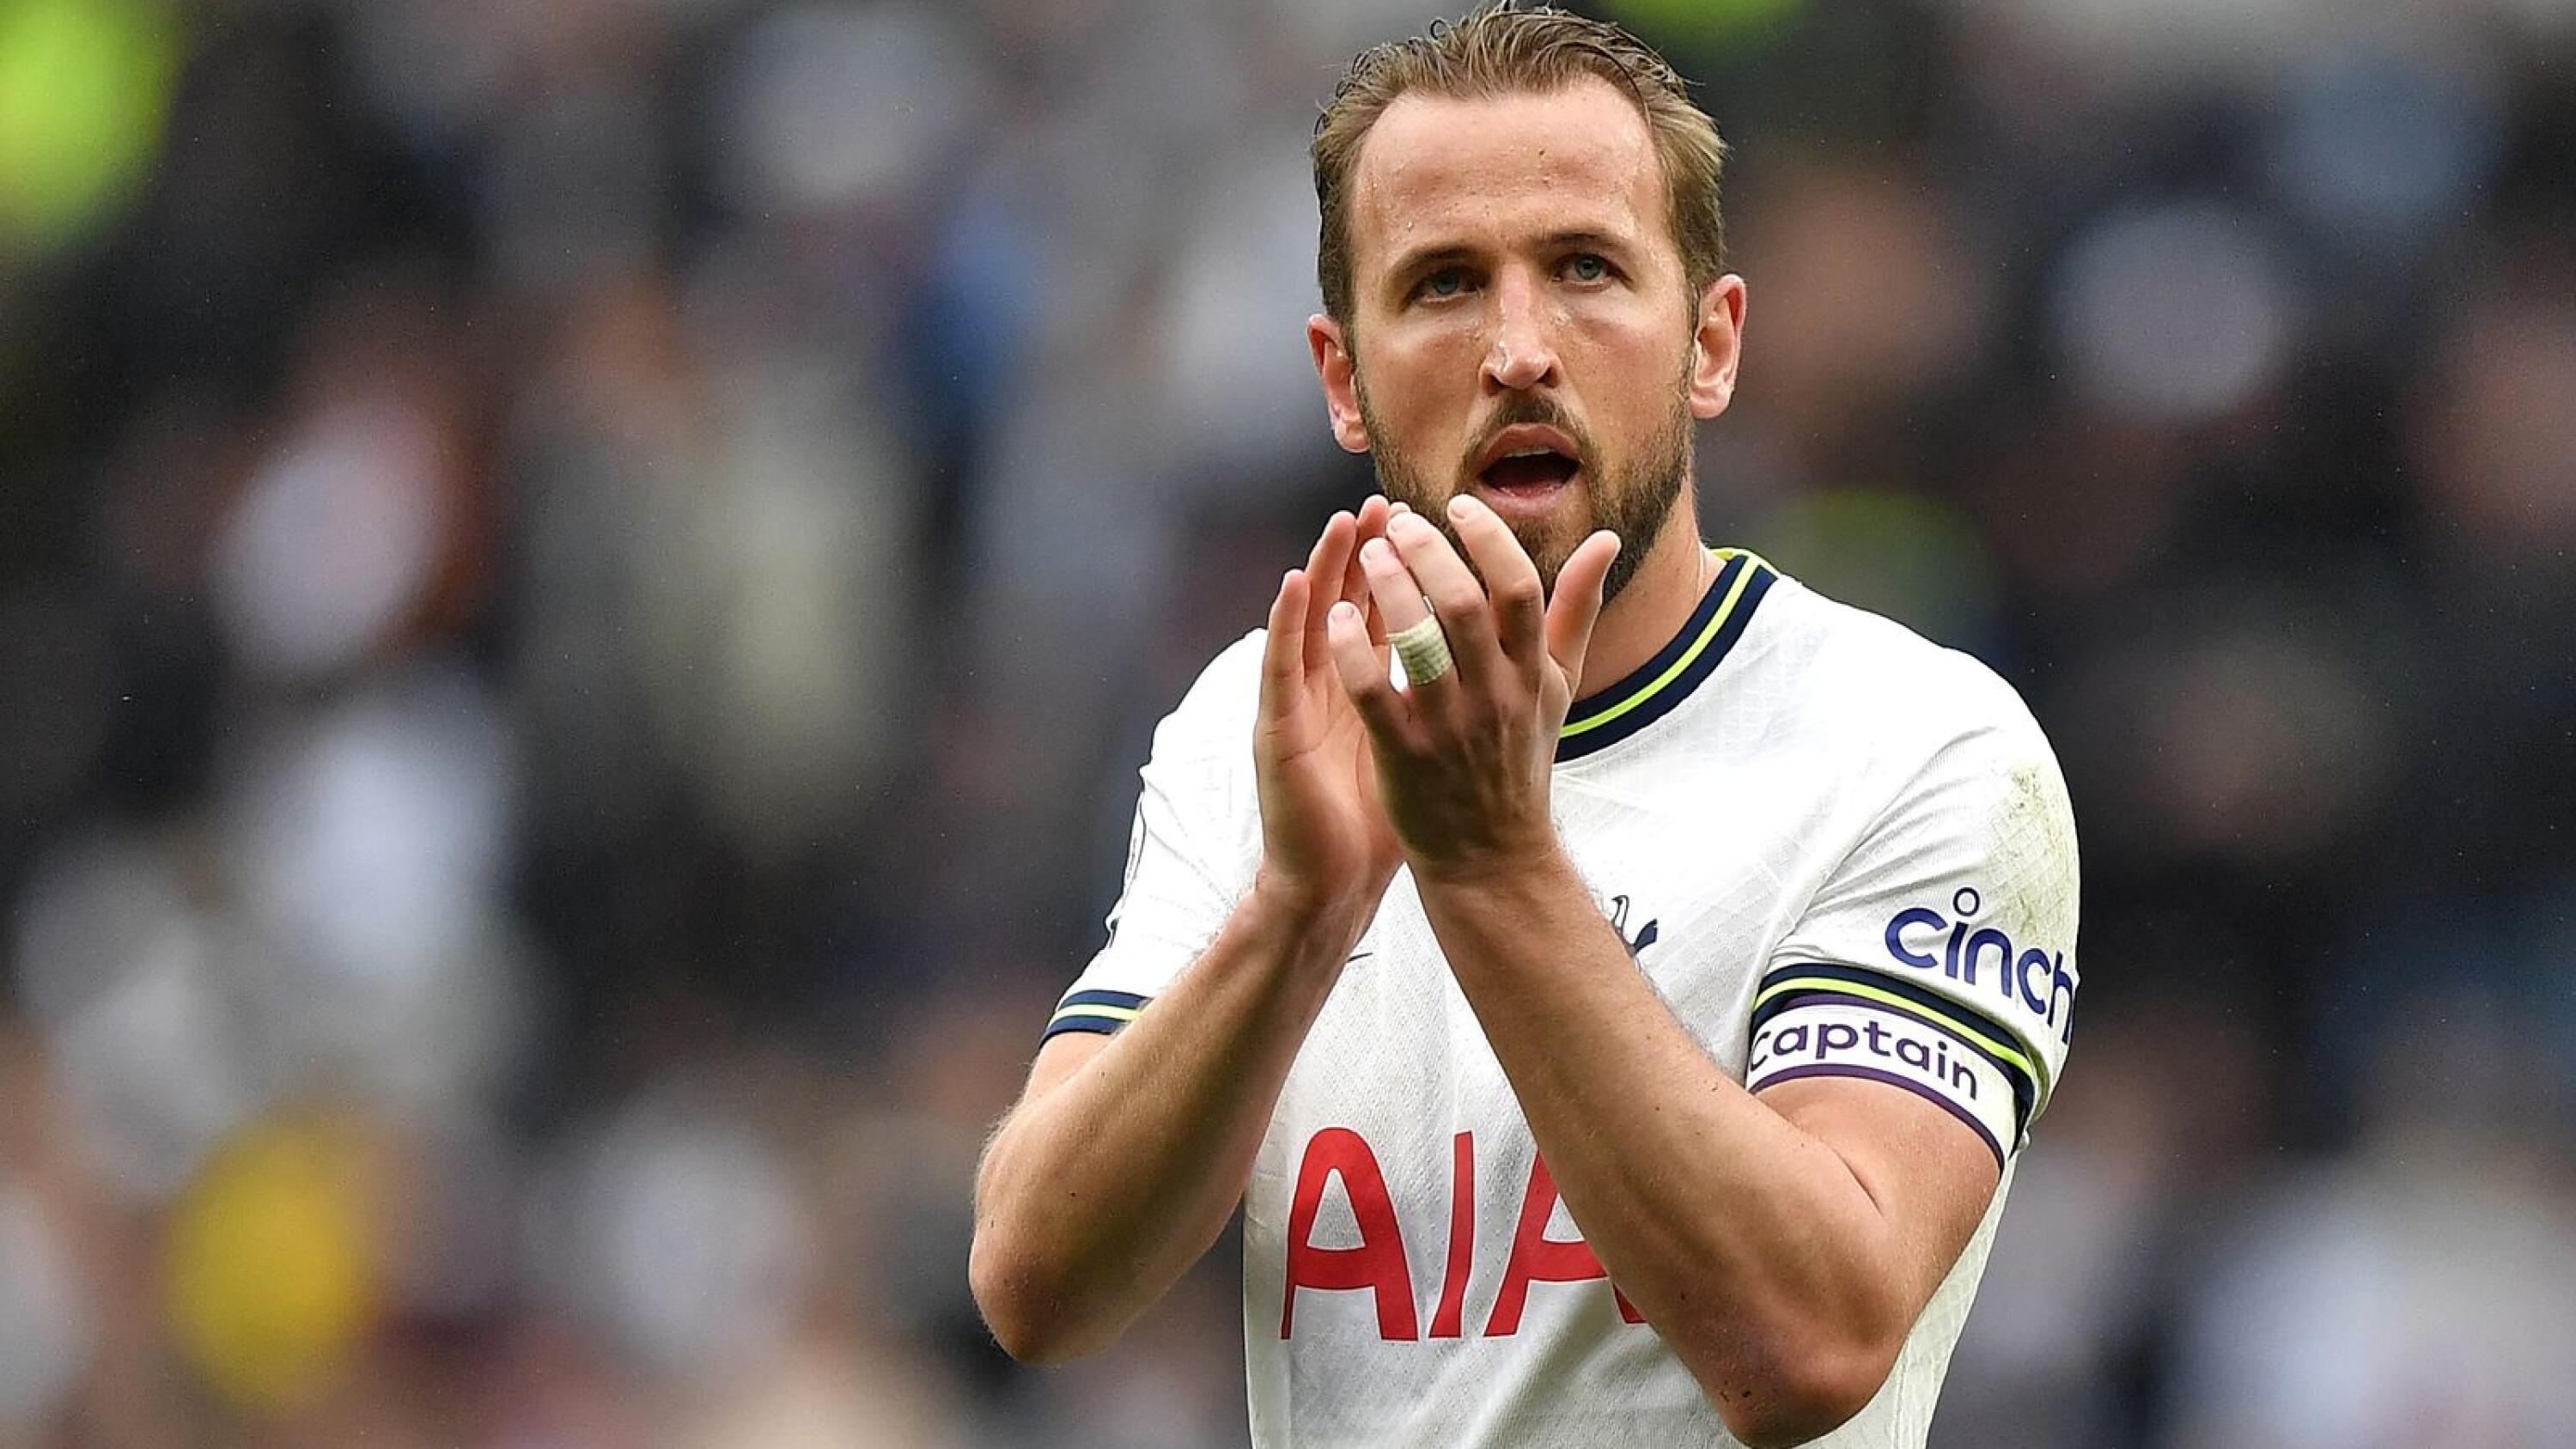 Tottenham Hotspur striker Harry Kane applauds fans after a Premier League game